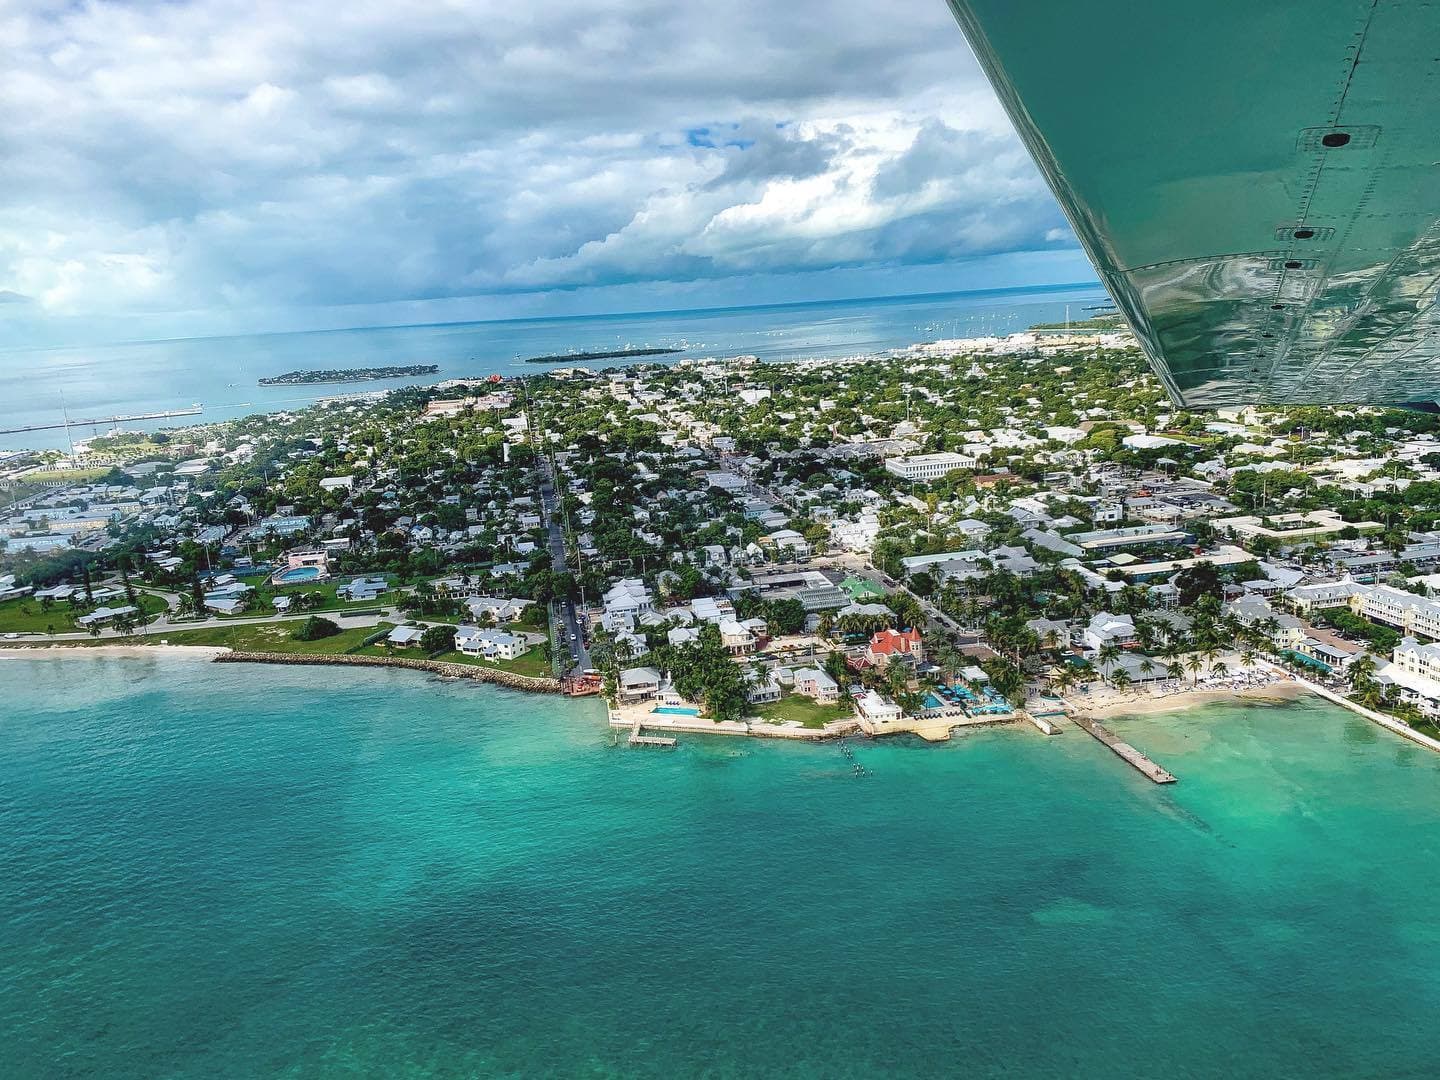 Birds eye view of Key West